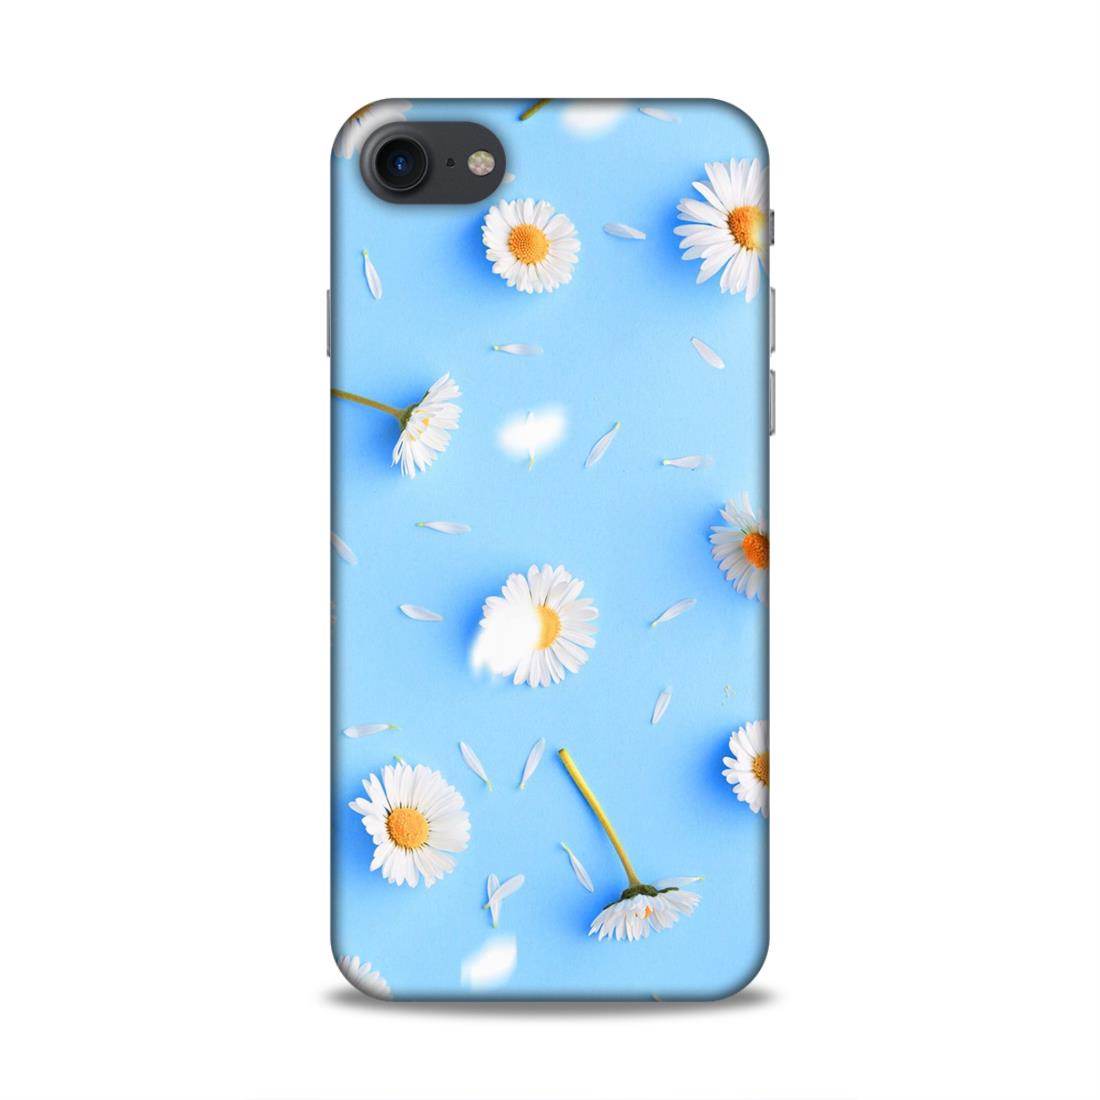 Floral In Sky Blue Hard Back Case For Apple iPhone 7 / 8 / SE 2020